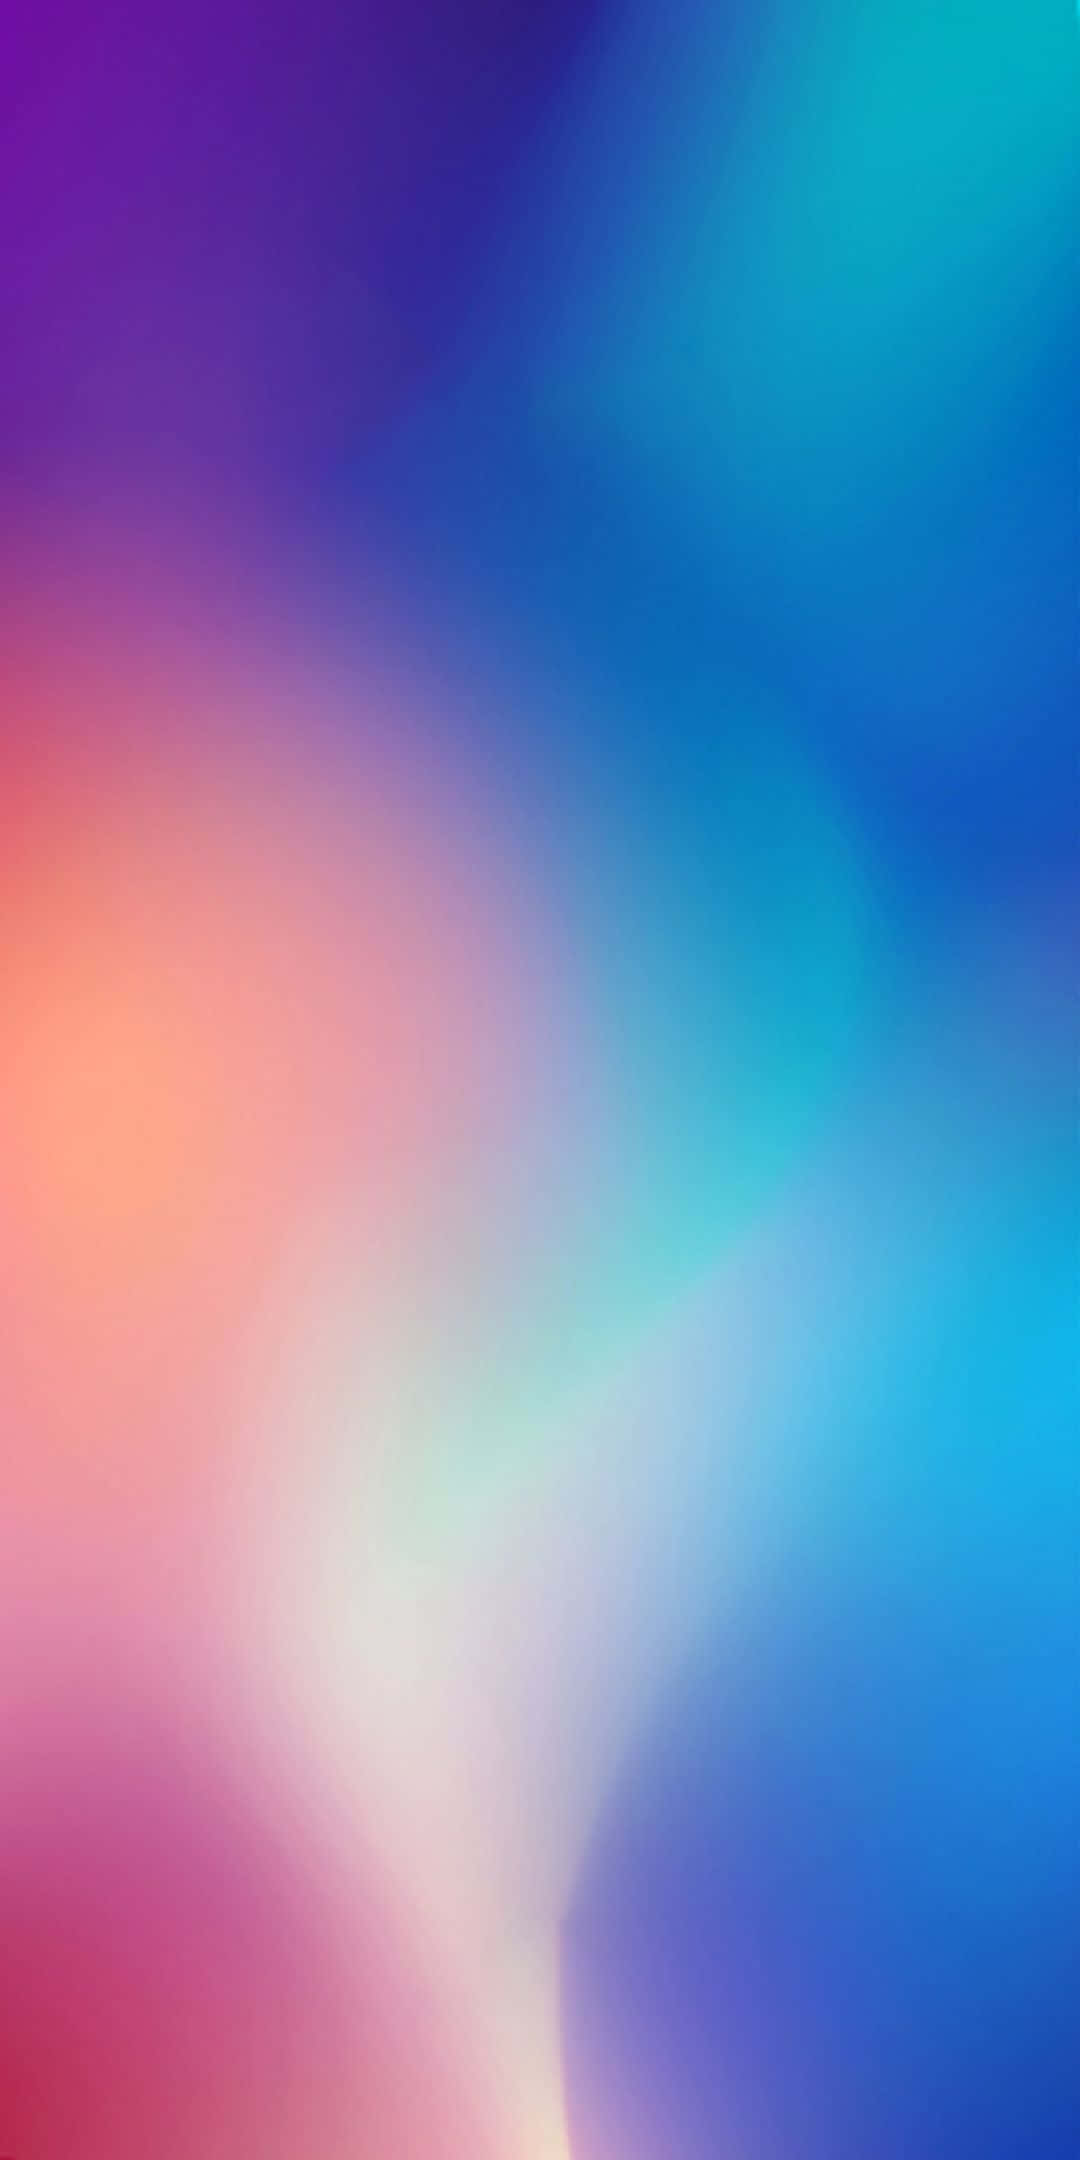 Xiaomihintergrund Mit 1080 X 2160 Auflösung.